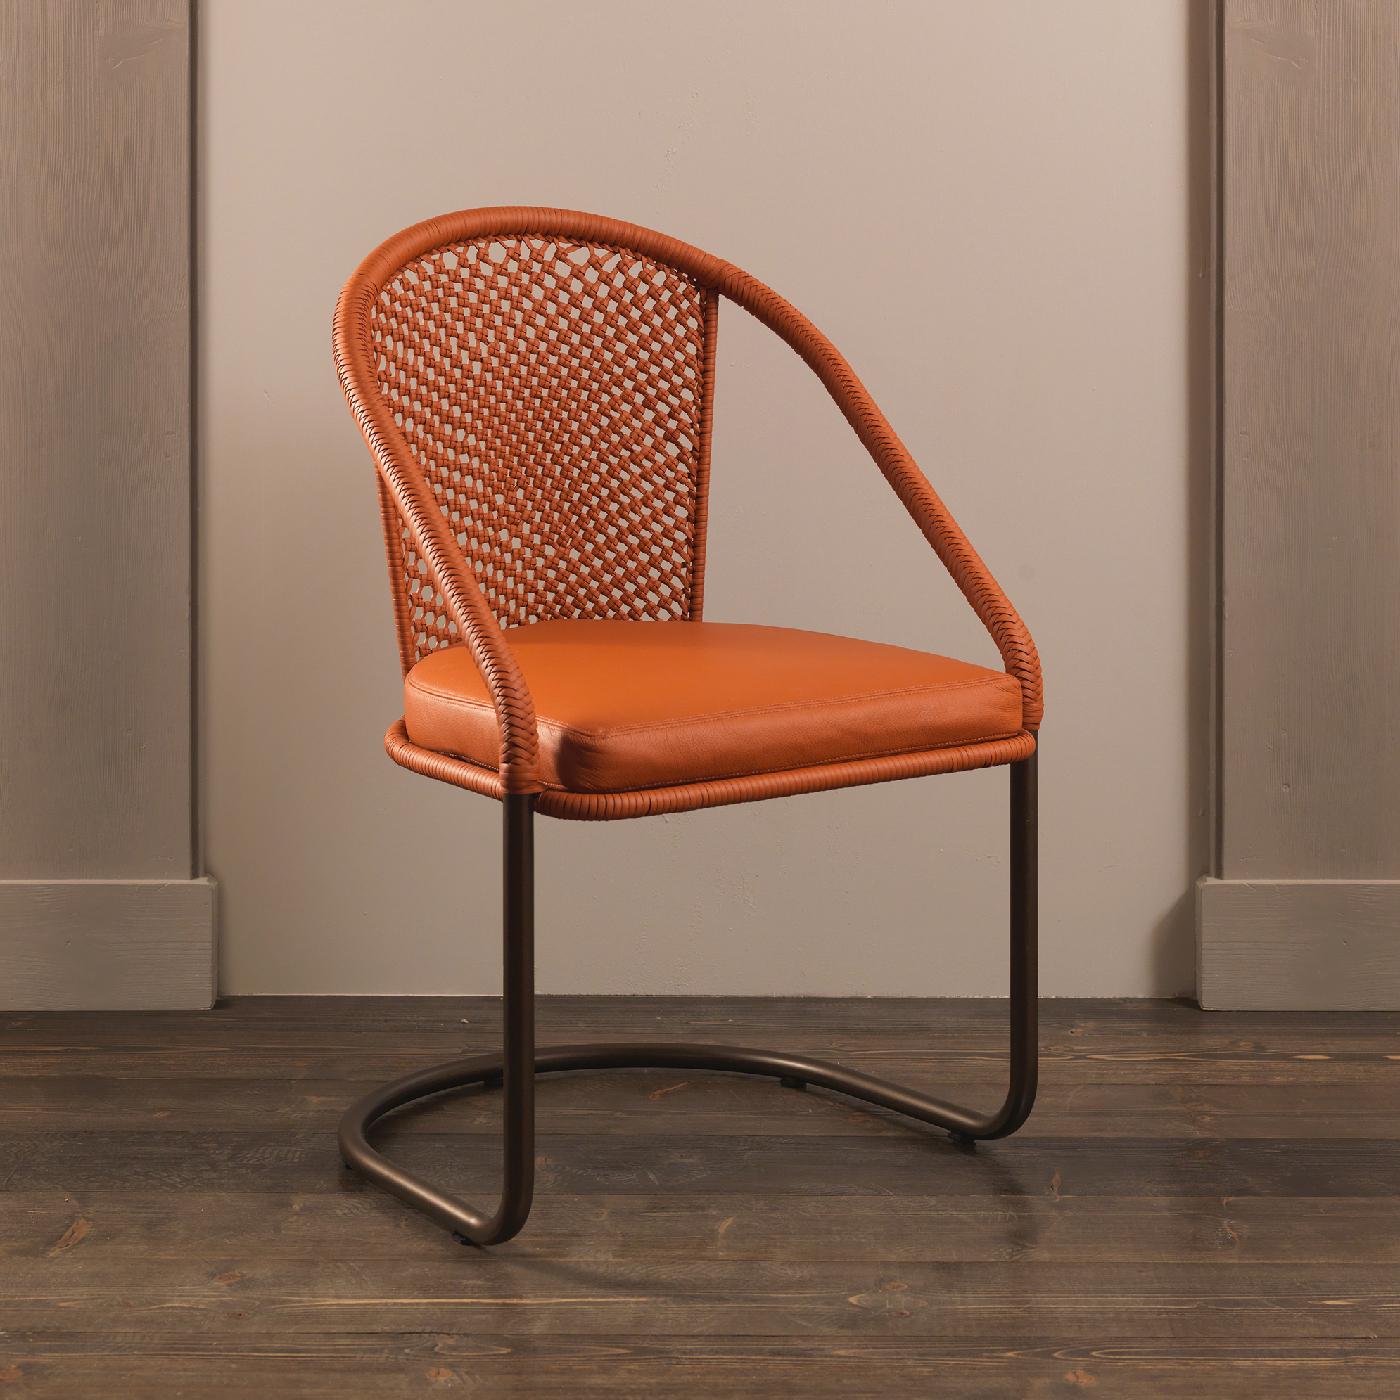 Ce fauteuil d'intérieur est un exercice de minimalisme élégant. Il est le résultat d'une collaboration entre Officina Ciani et Ciarmoli Queda Studio et sera une pièce d'accent unique dans toutes les pièces de la maison. La structure en porte-à-faux